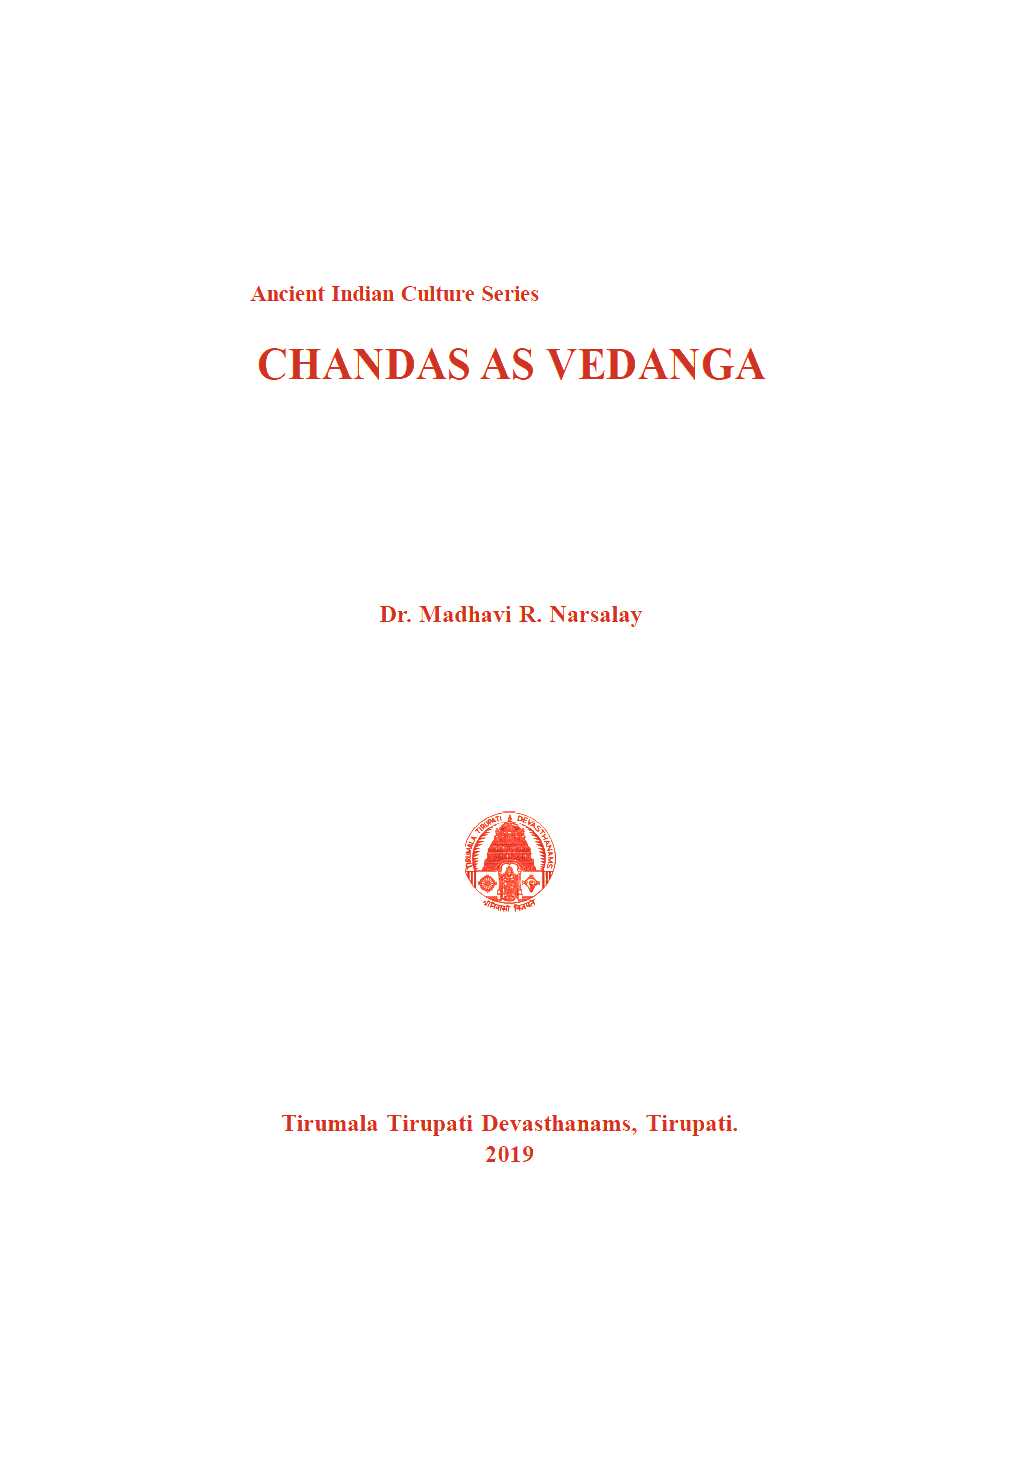 Chandas as Vedanga